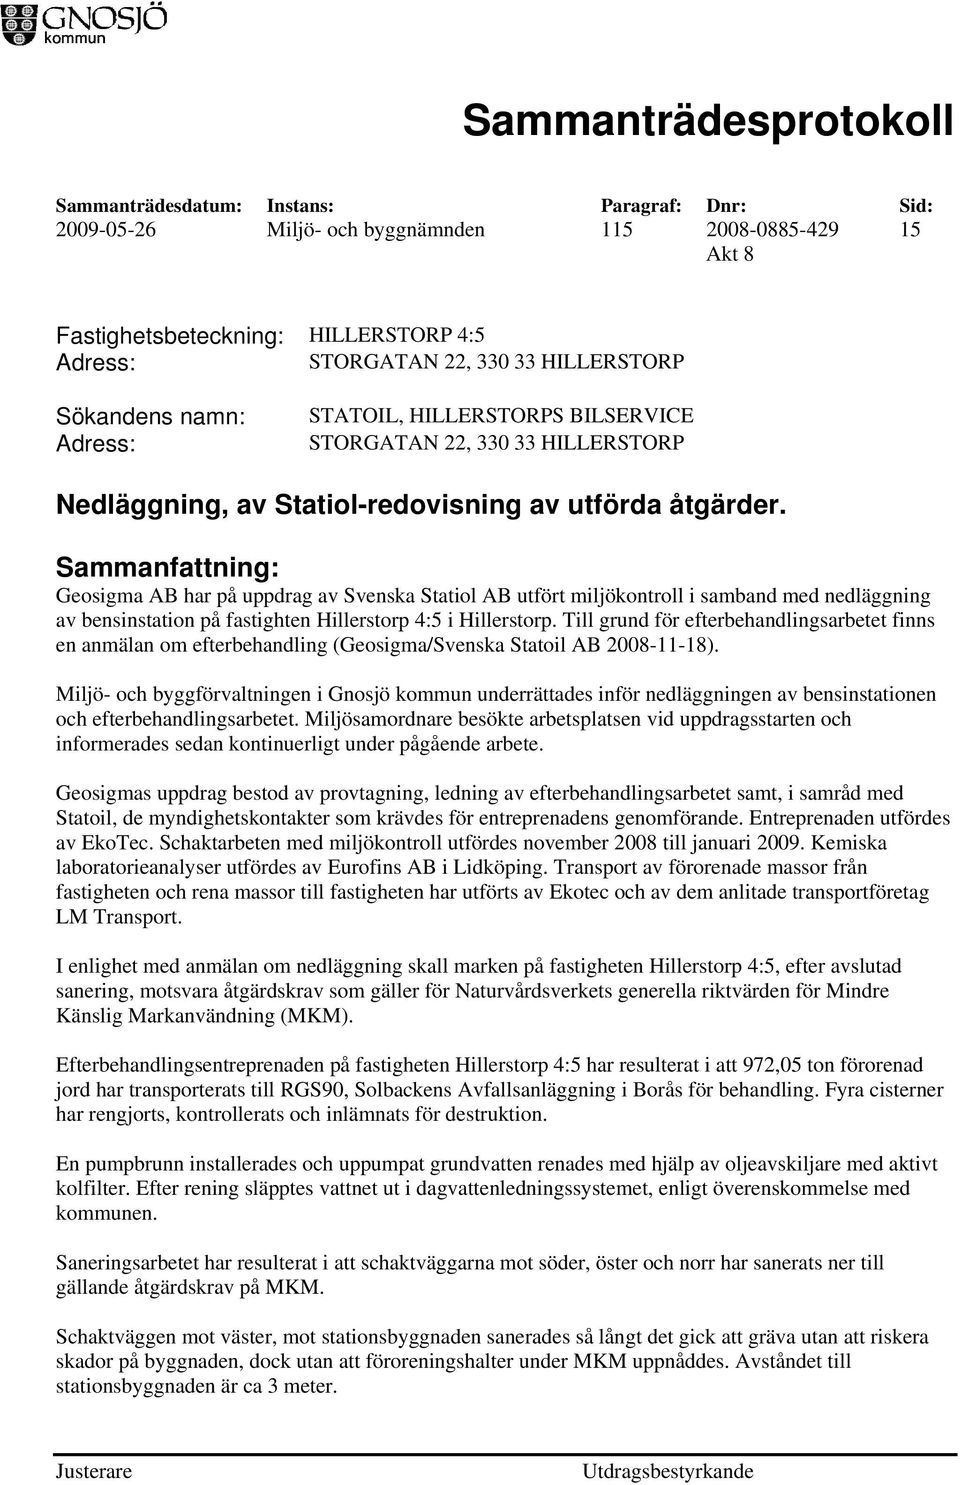 Sammanfattning: Geosigma AB har på uppdrag av Svenska Statiol AB utfört miljökontroll i samband med nedläggning av bensinstation på fastighten Hillerstorp 4:5 i Hillerstorp.